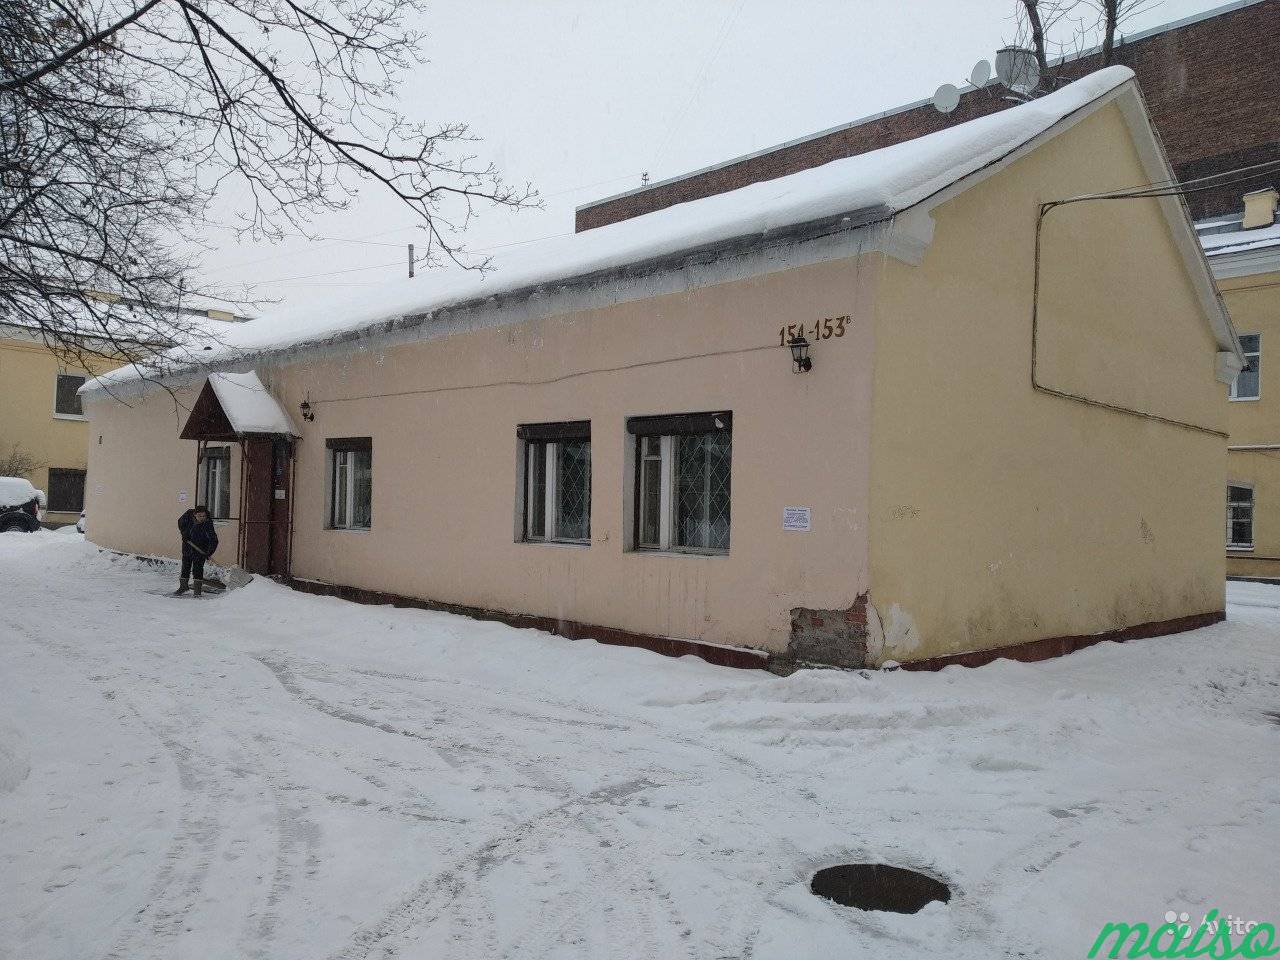 Помещение отдельно стоящего здания в Санкт-Петербурге. Фото 1